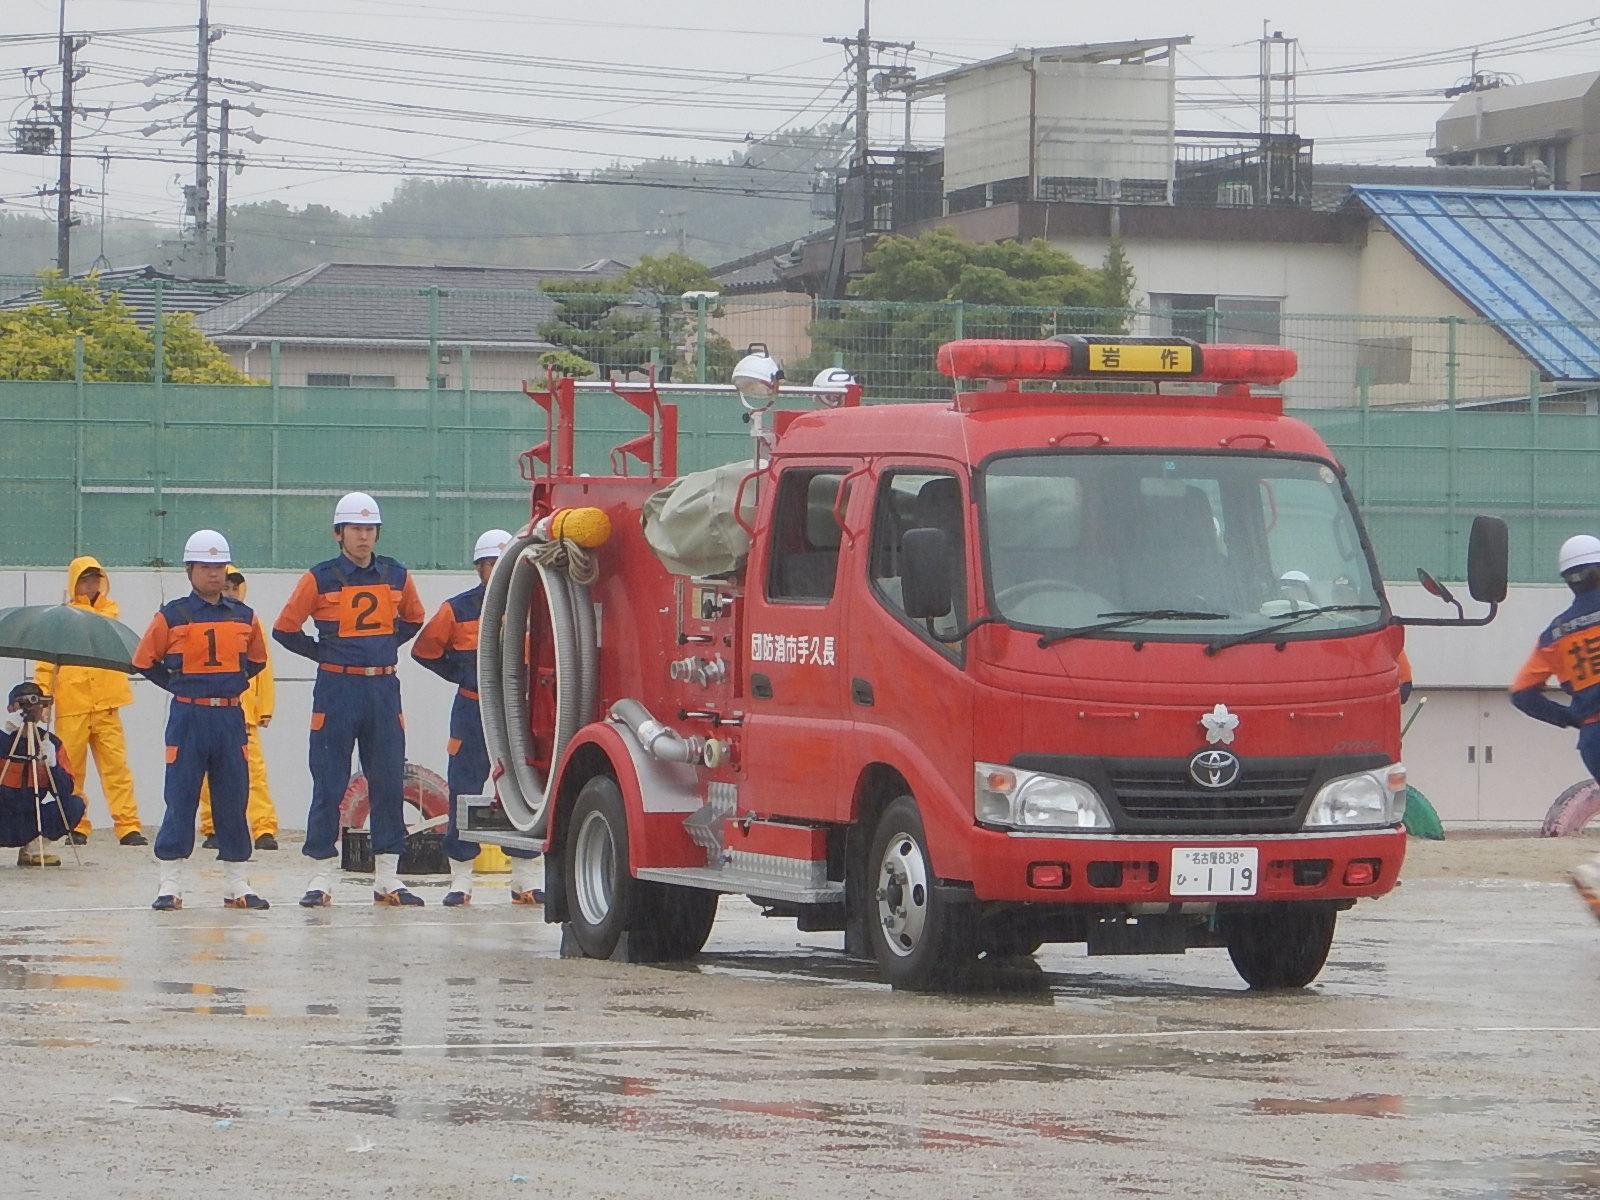 雨の降るグラウンドに消防車両が停まっており、消防車両の後ろで白いヘルメットを被りゼッケンをつけた消防団員が手を後ろに組んで立っている写真